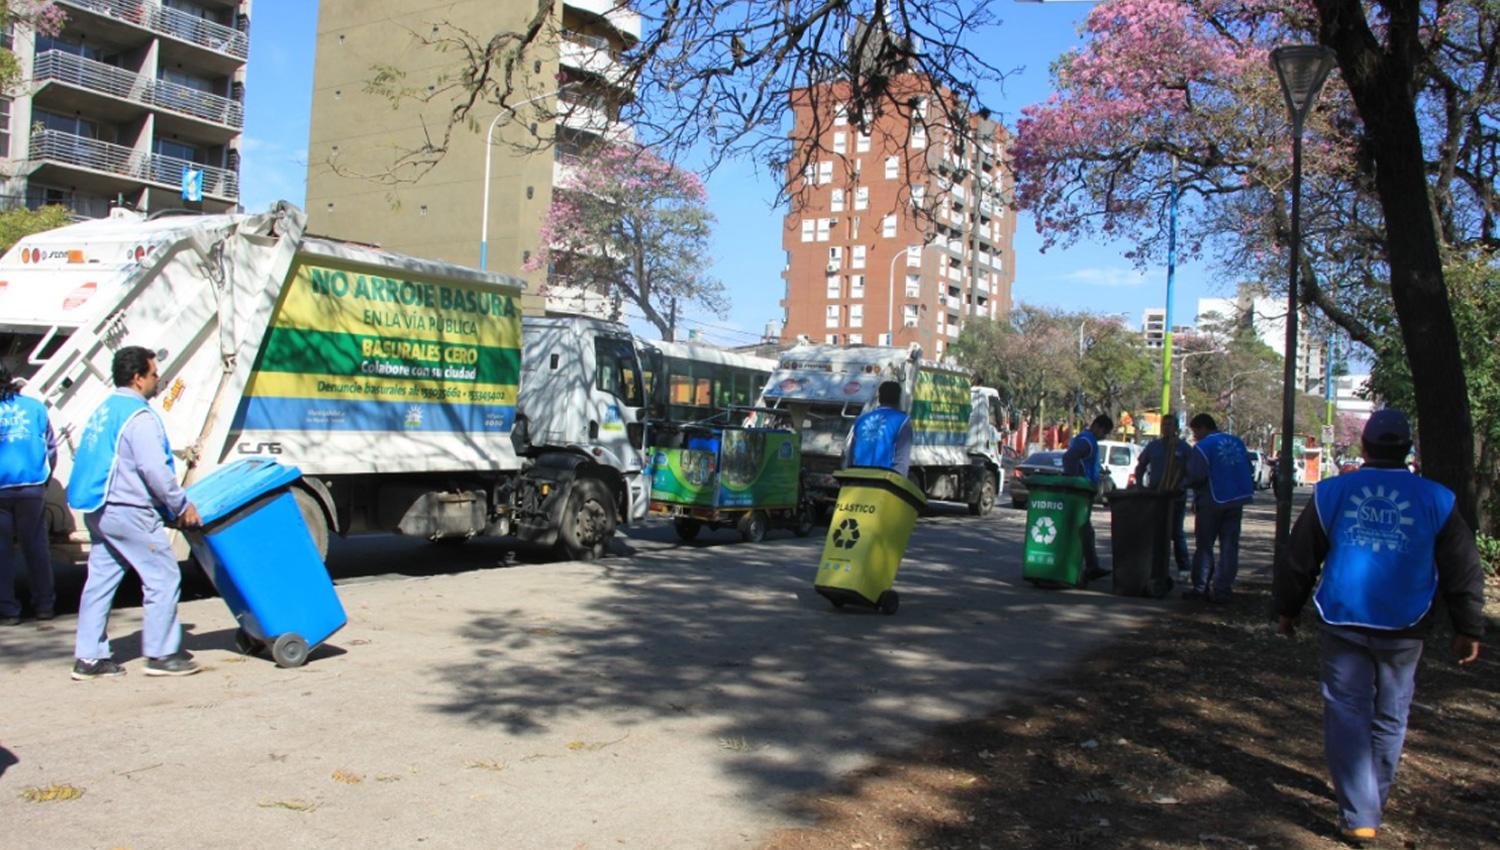 Miles de tucumanos aprovecharon el sábado para salir a limpiar la ciudad